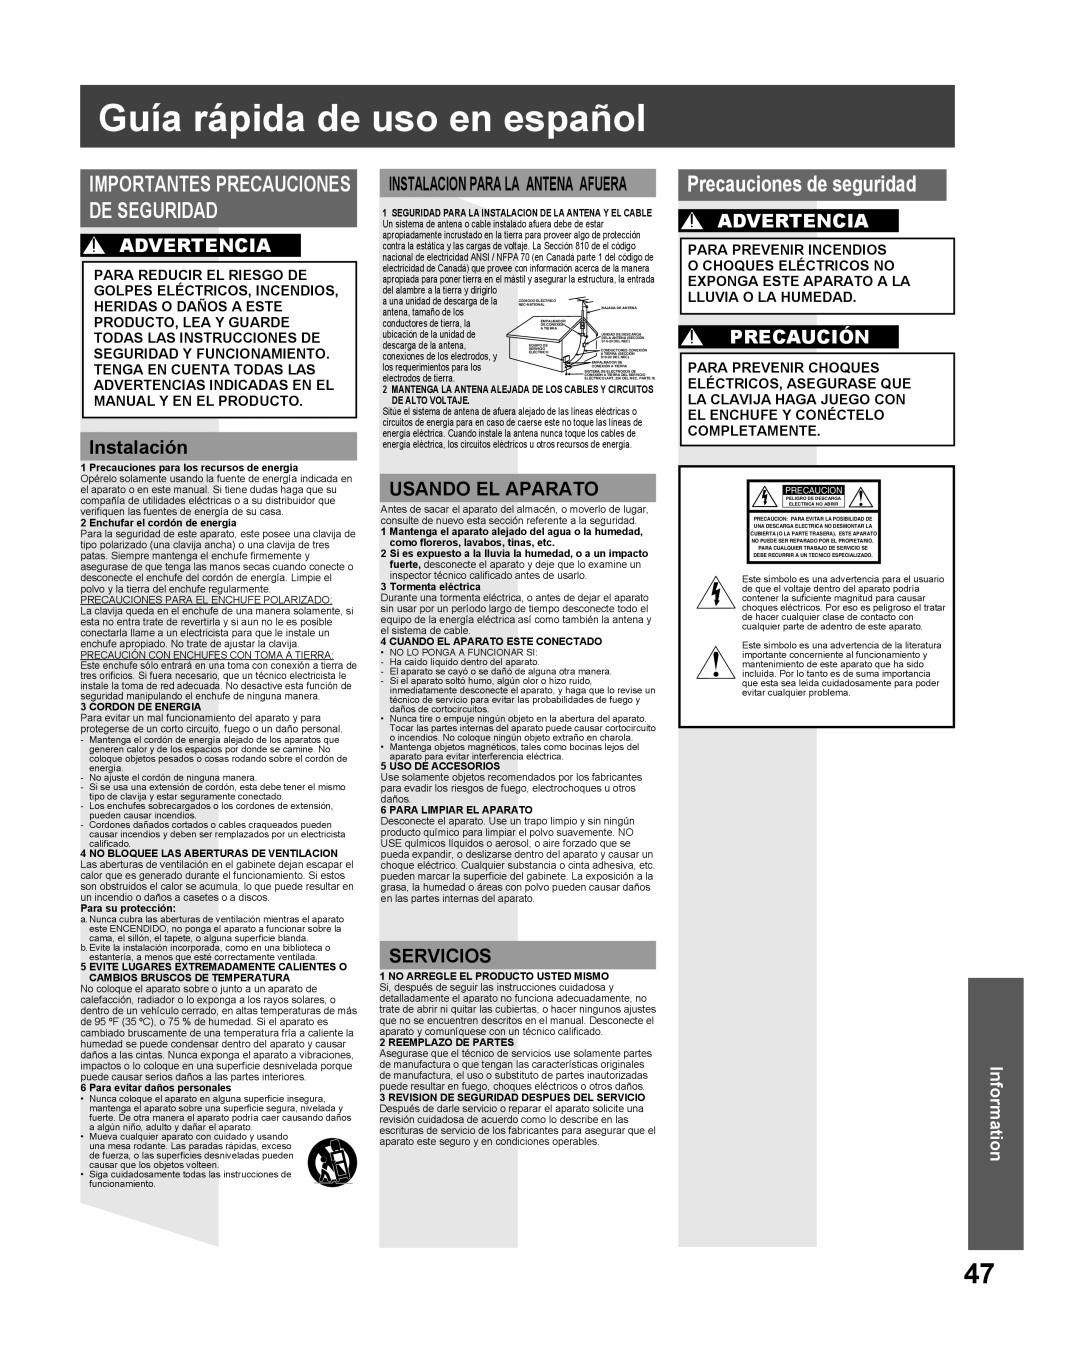 Panasonic PV-27DF5 Guía rápida de uso en español, Precauciones de seguridad, Advertencia, Instalación, Usando El Aparato 